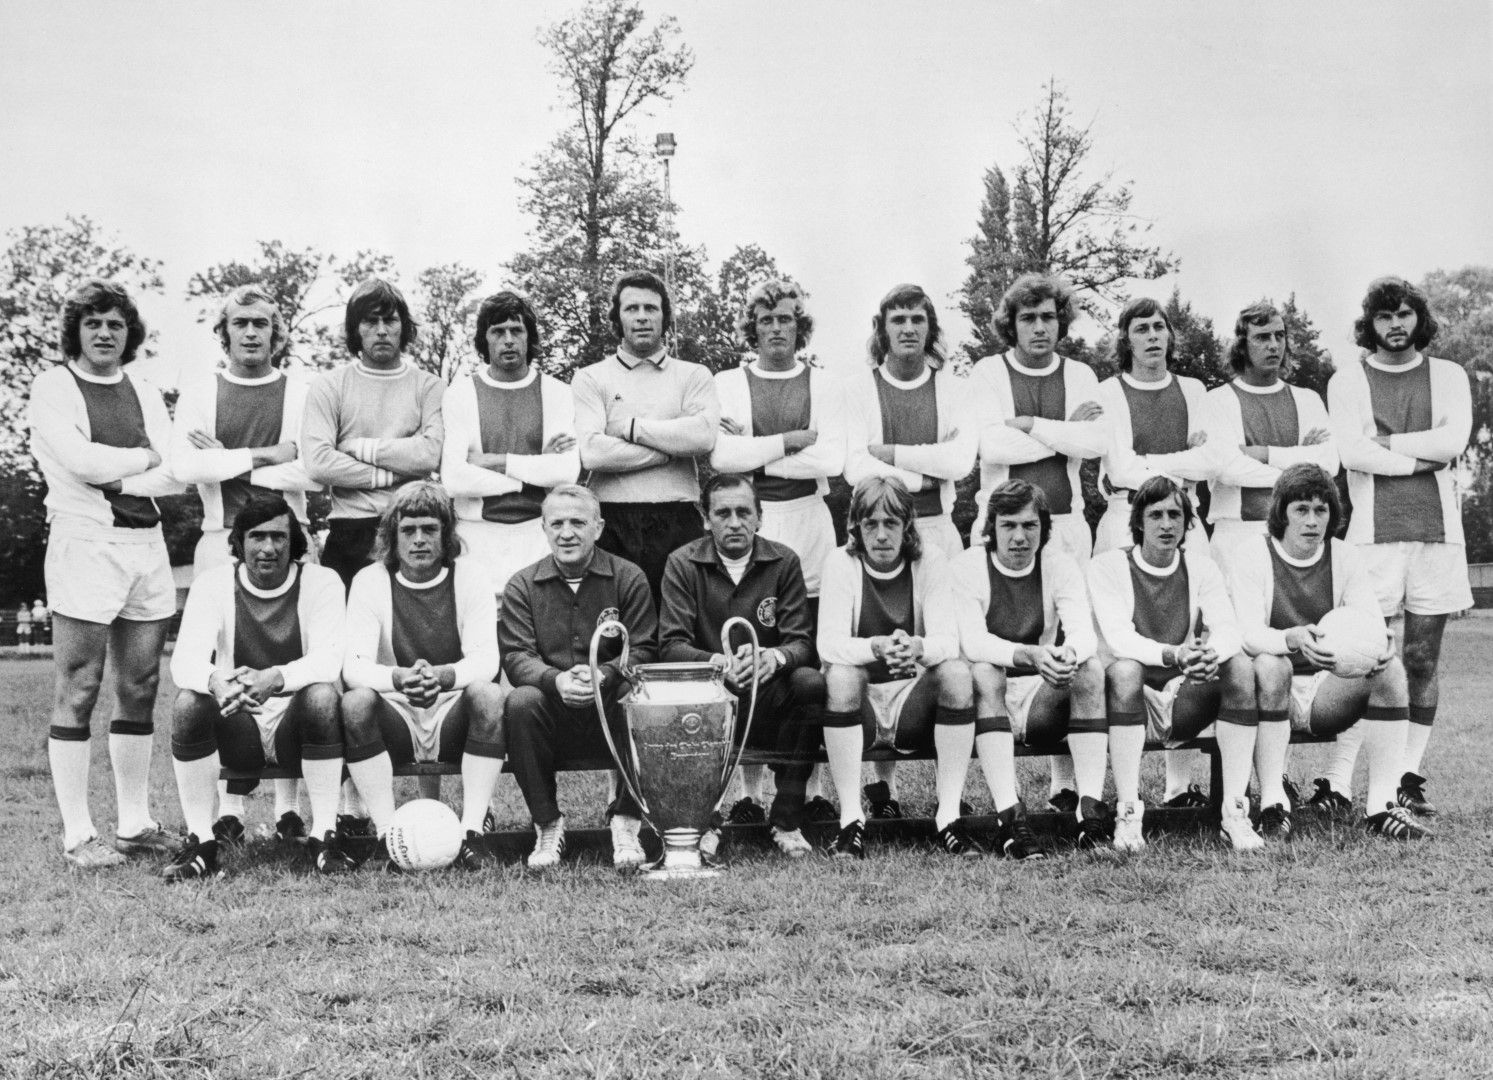 Втората ера е от 90-те със суперотбора на Луис ван Гаал, като четвъртата купа на шампионите дойде през 1995 г. Освен тези трофеи, "Аякс" има КНК (1987 г.), Купа на УЕФА (1992 г.), две Суперкупи (1973 и 1995 г.), както и два триумфа за Междуконтиненталната купа (1972 и 1995 г.).